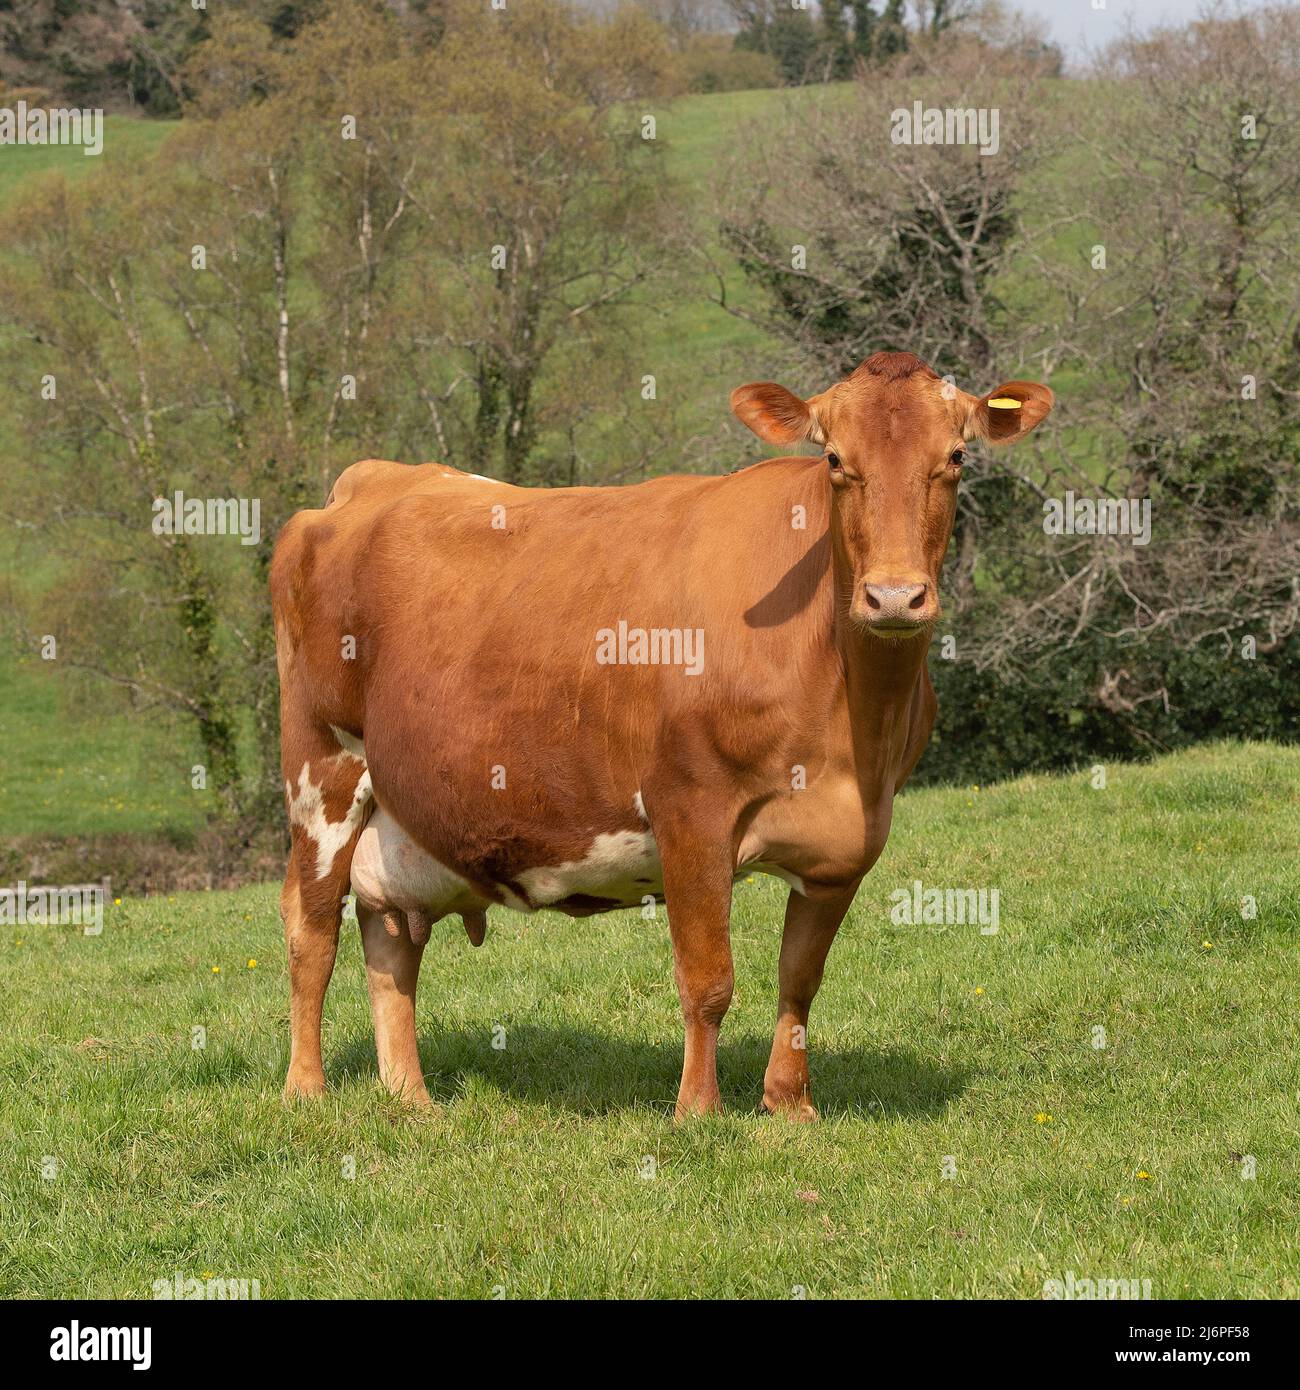 cow Stock Photo